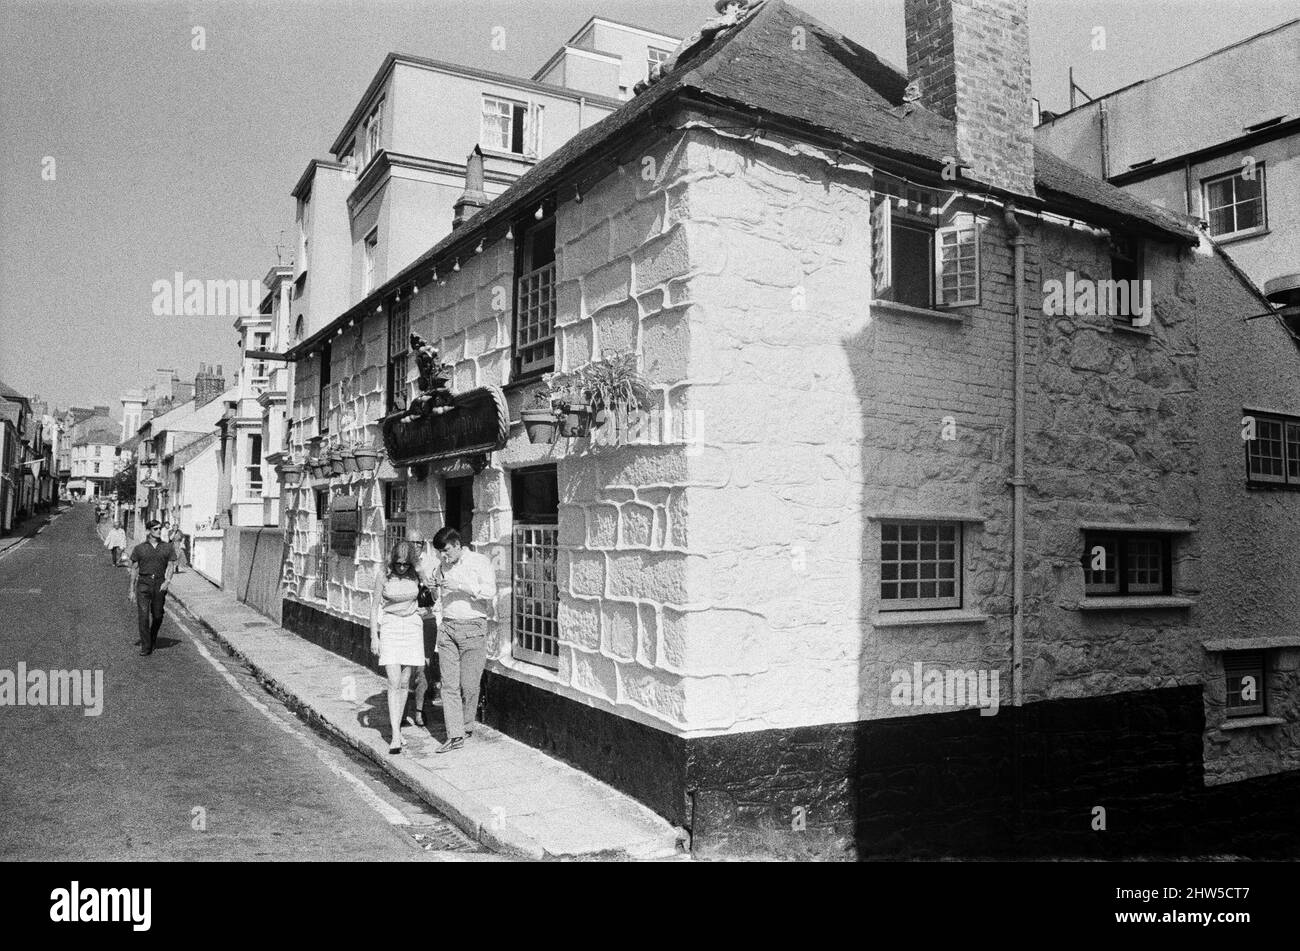 Admiral Benbow pub et restaurant, Chapel St, Penzance, Cornwall. Le pub porte le nom de l'amiral John Benbow datant du 17th siècle. Septembre 1968. Banque D'Images